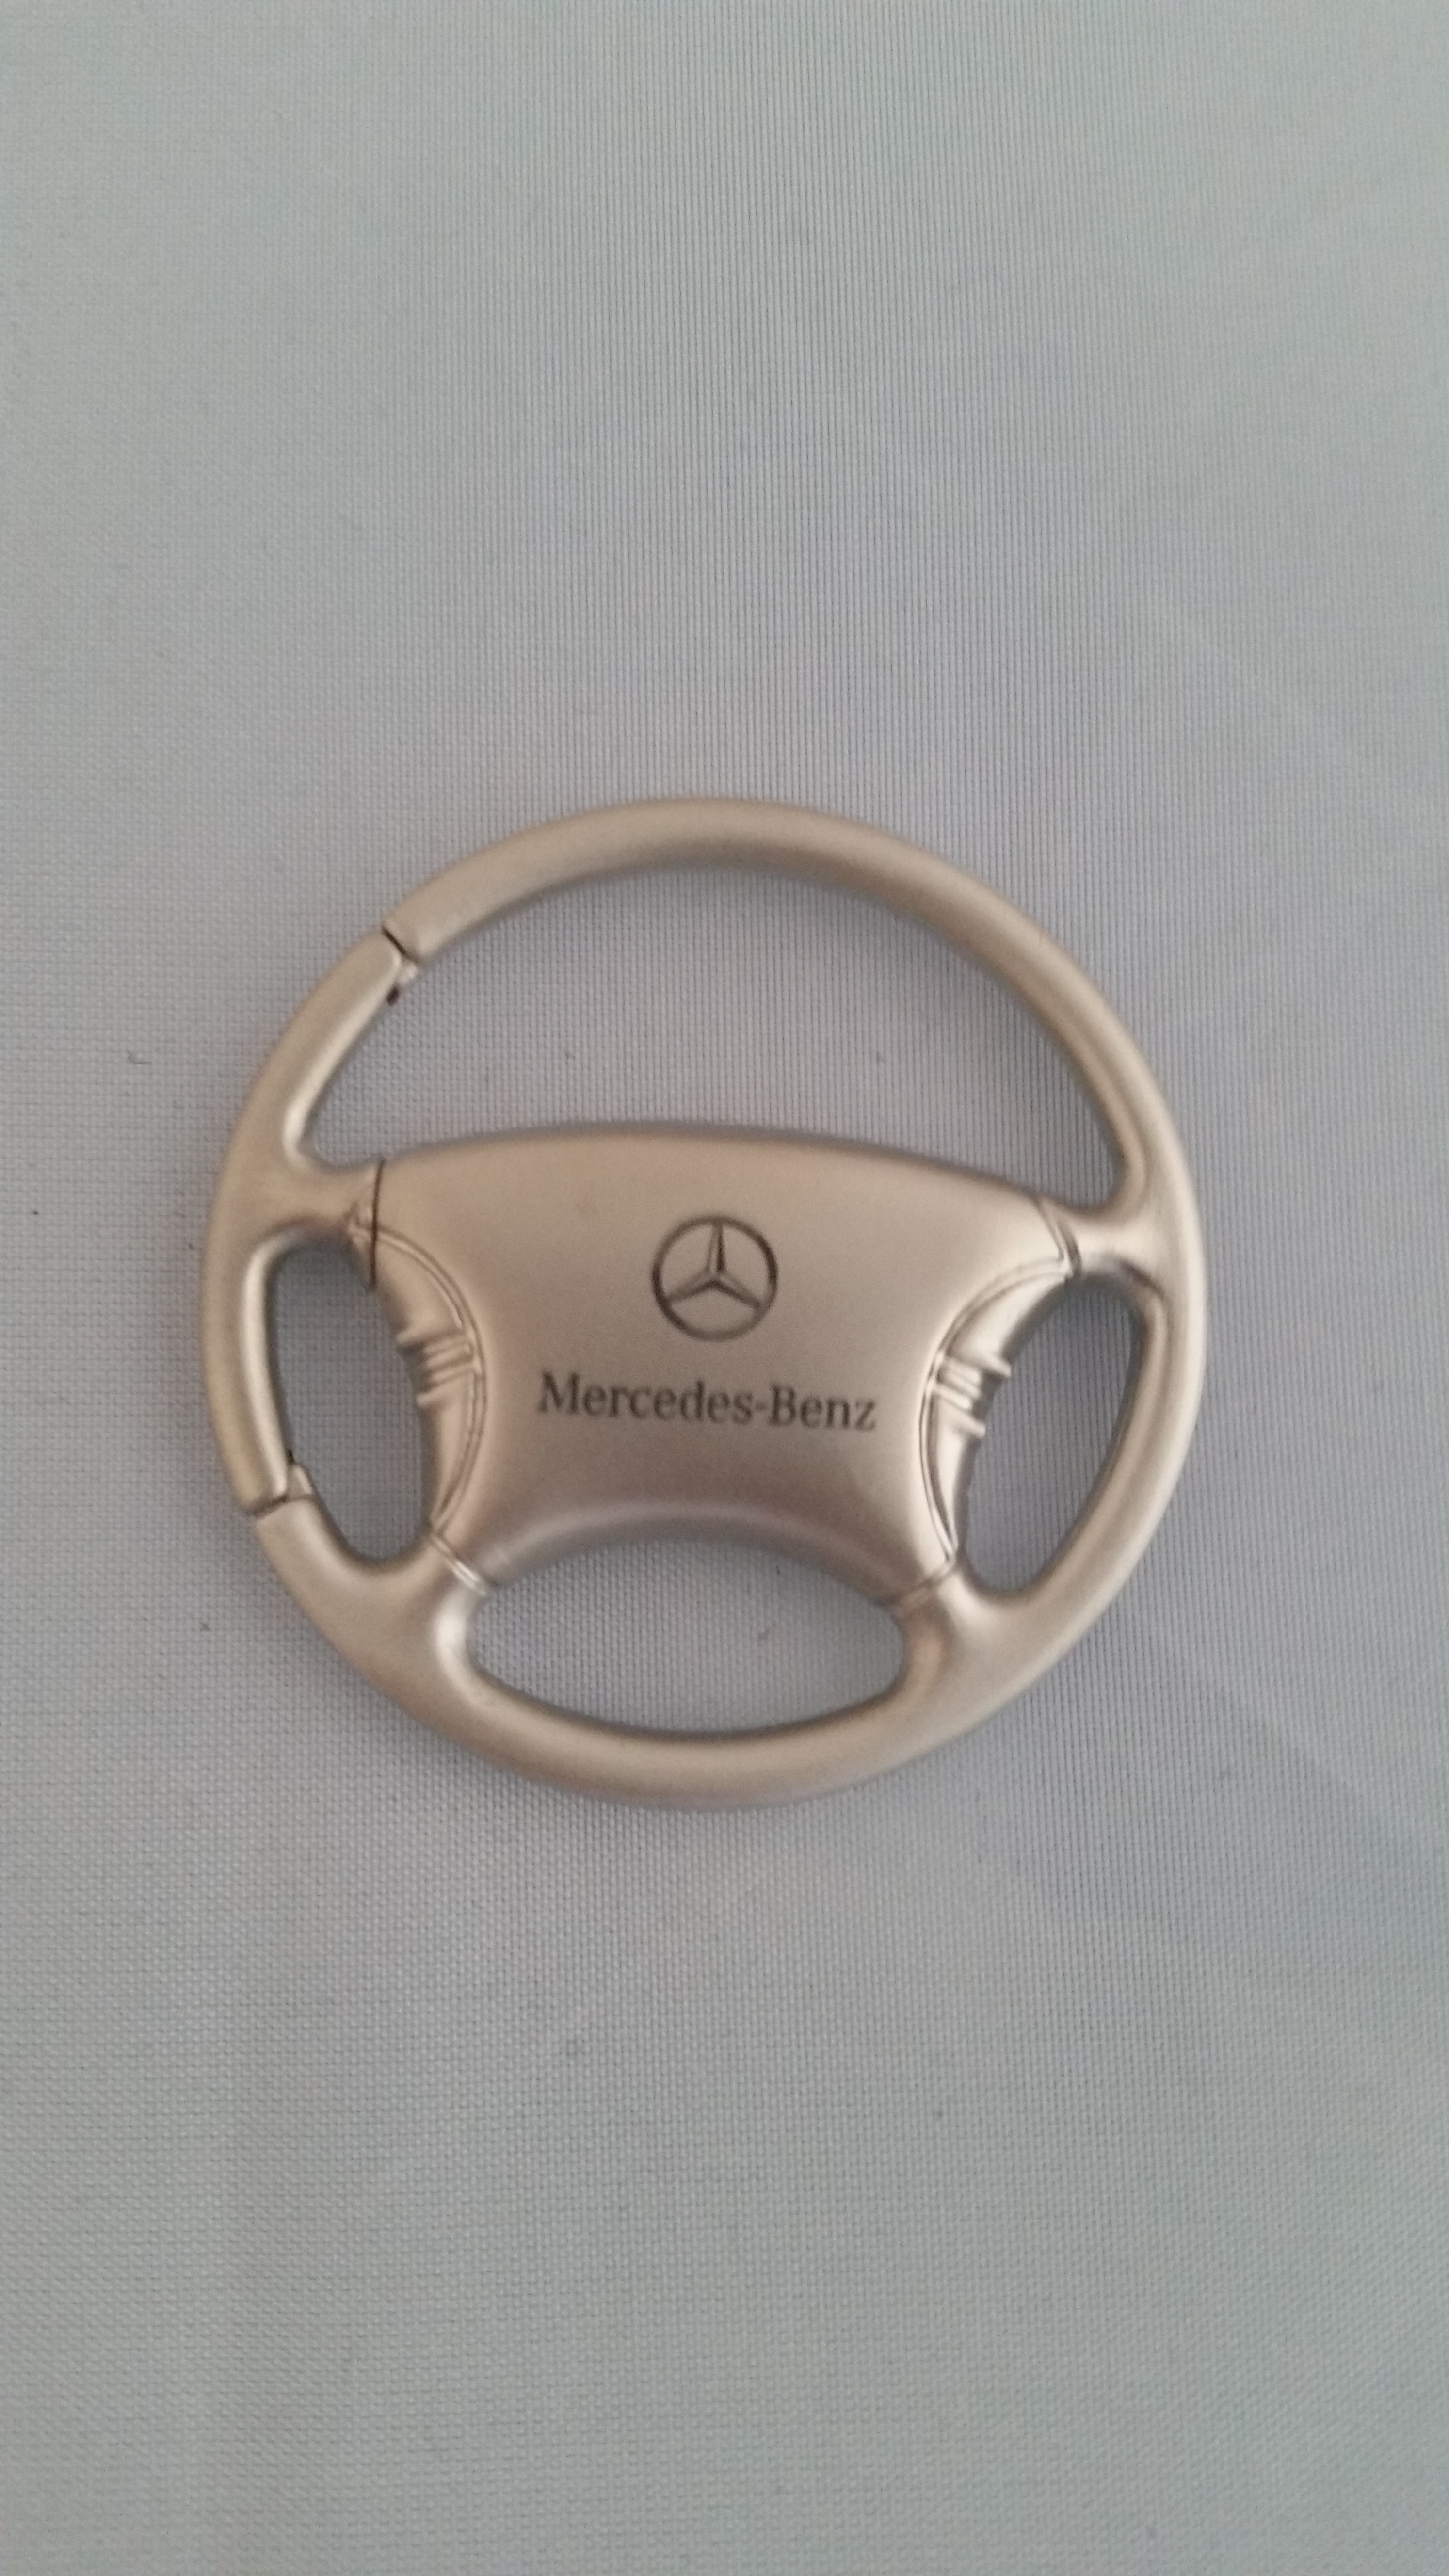 Mercedes Benz Silver Steering Wheel Keychain 